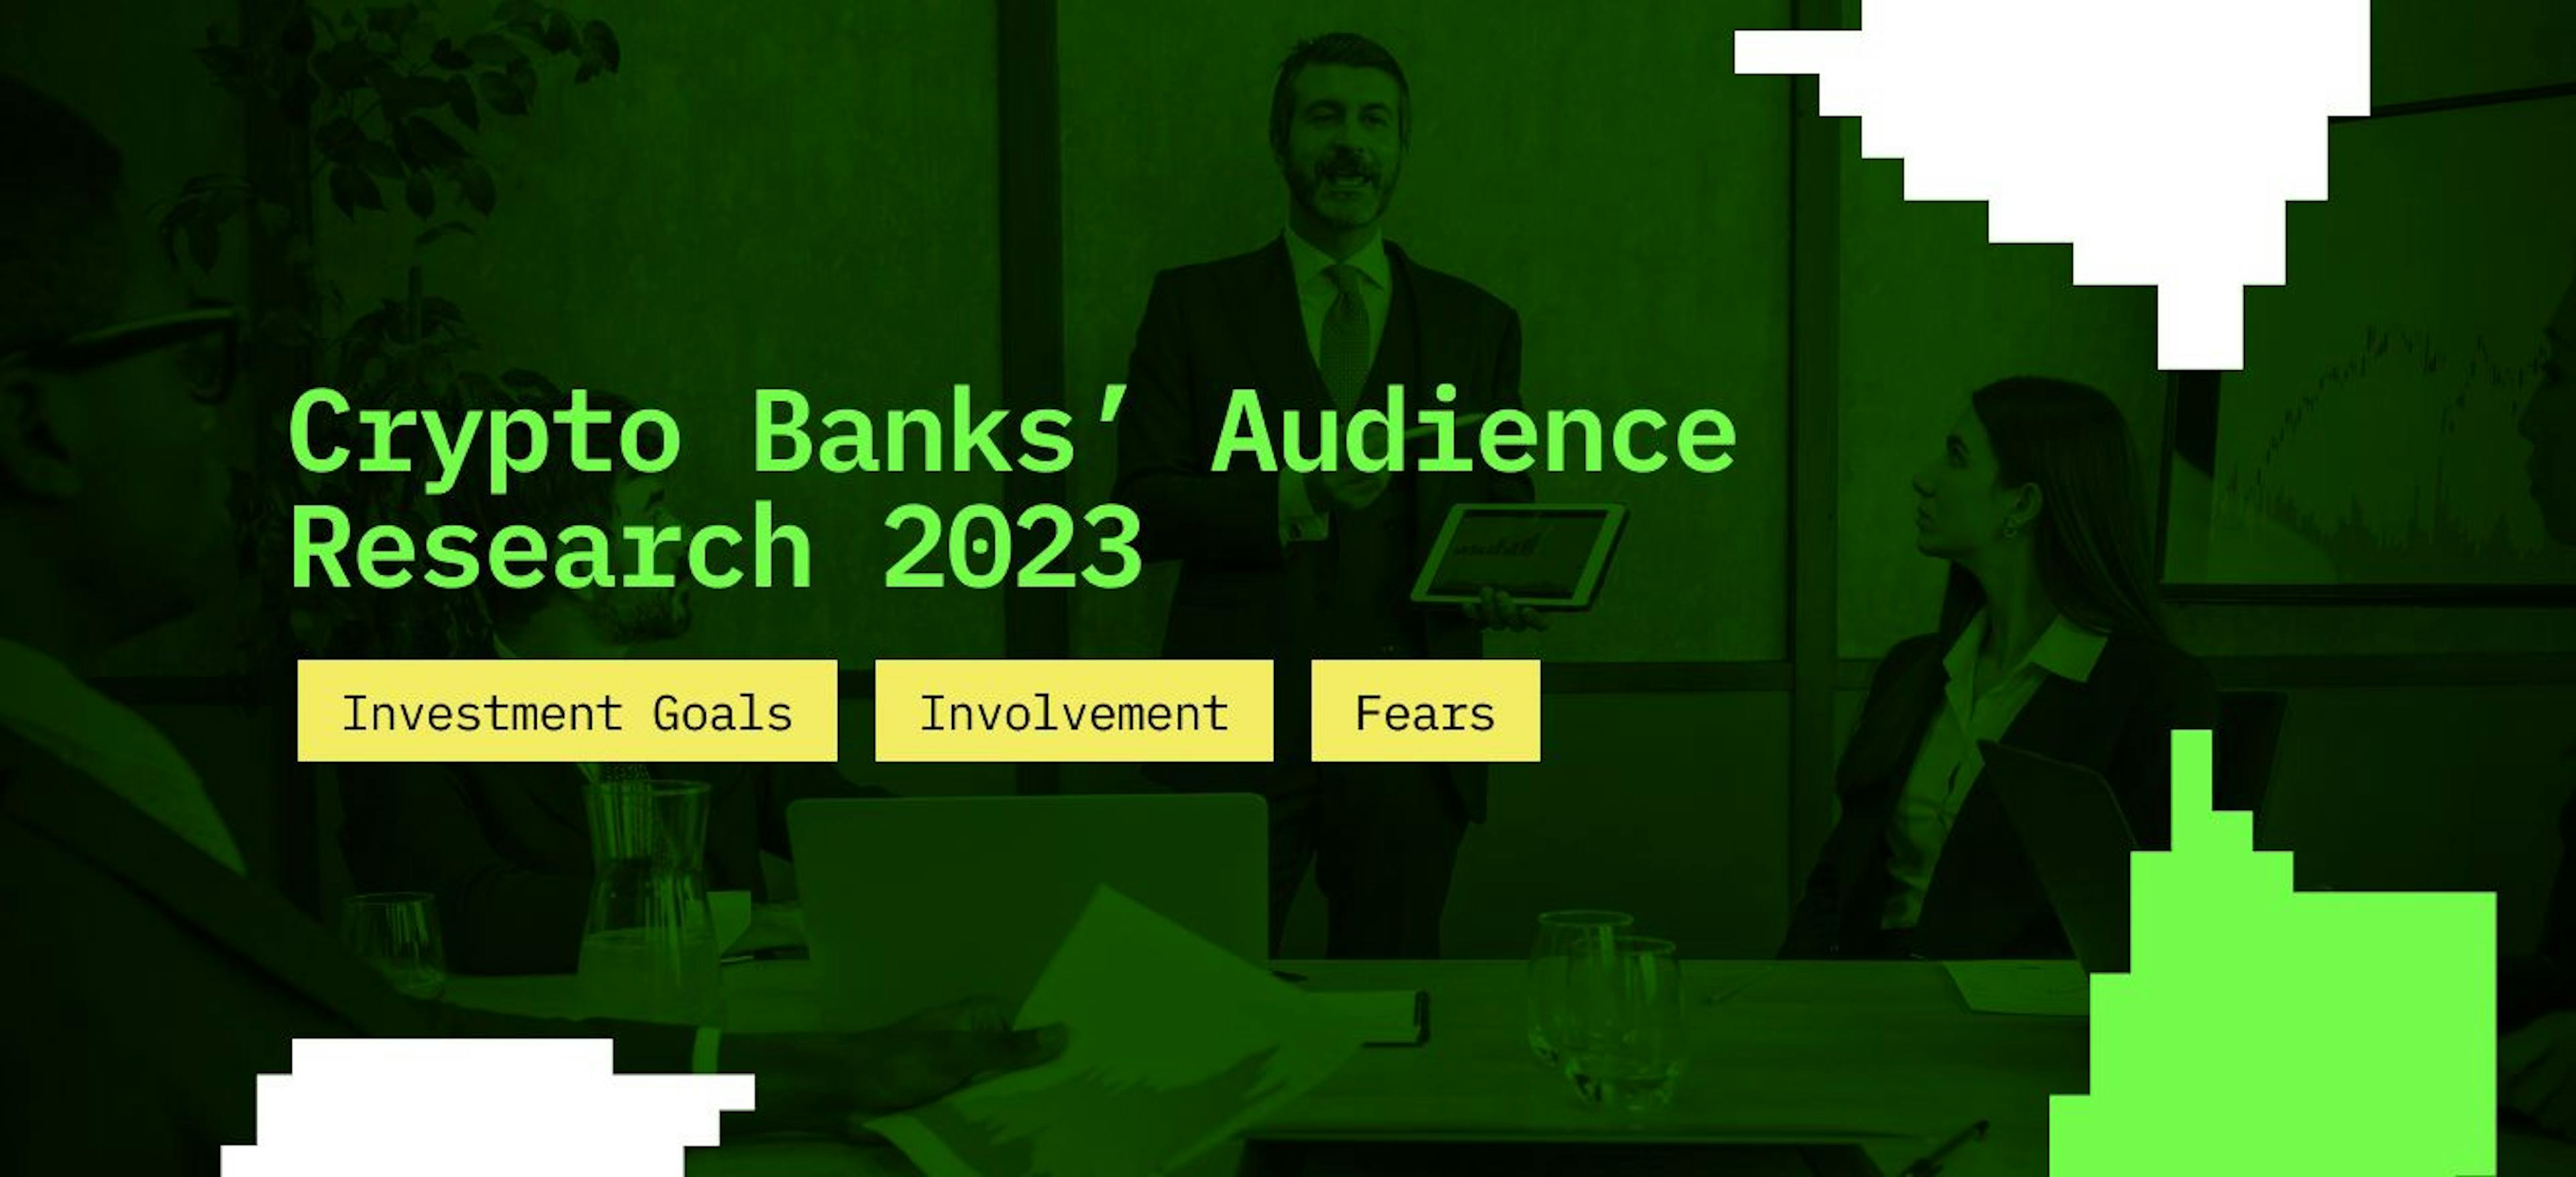 featured image - Investigación de audiencia de Crypto Banks 2023: objetivos de inversión, participación y miedos